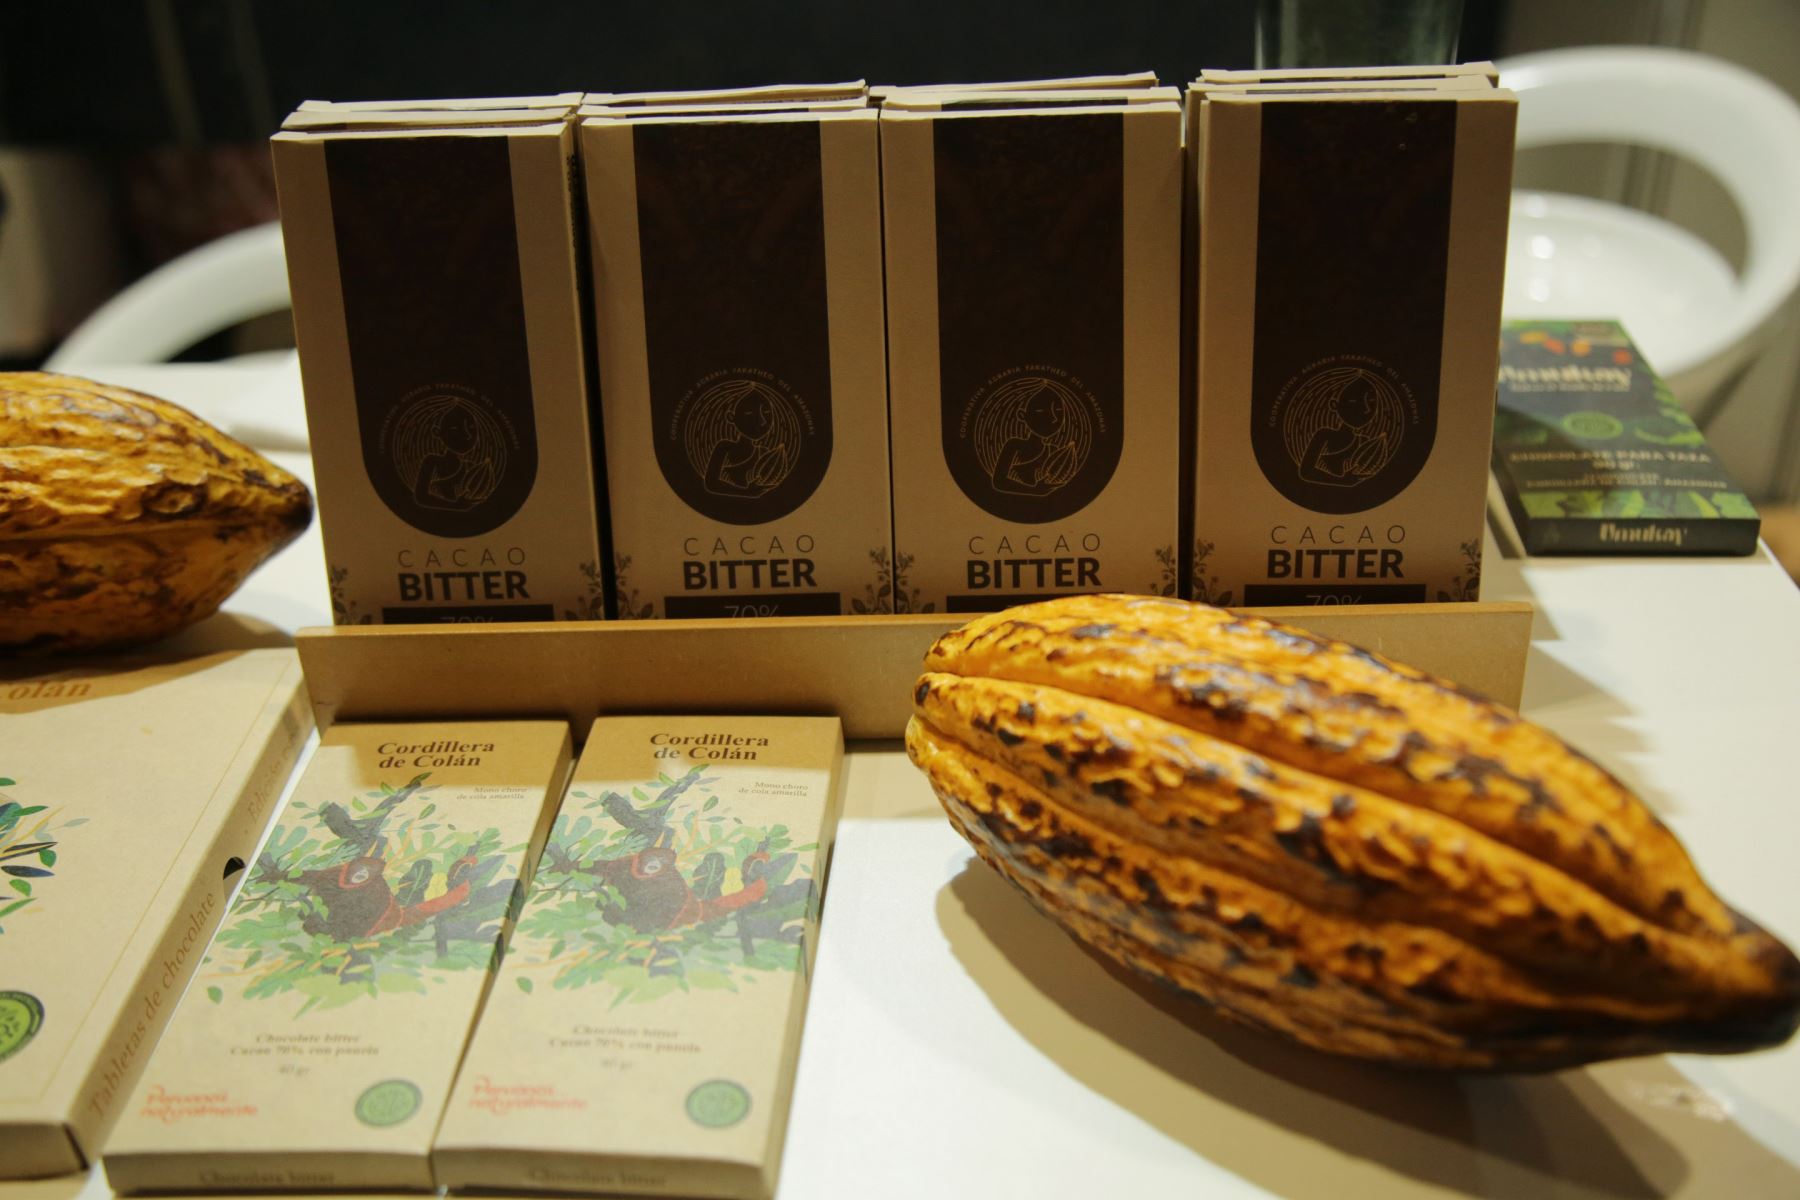 La marca de chocolates Cordillera de Colán presentó su edición especial de chocolates alusivos a especies de fauna silvestre de la región Amazonas. Foto: ANDINA/Sernanp.